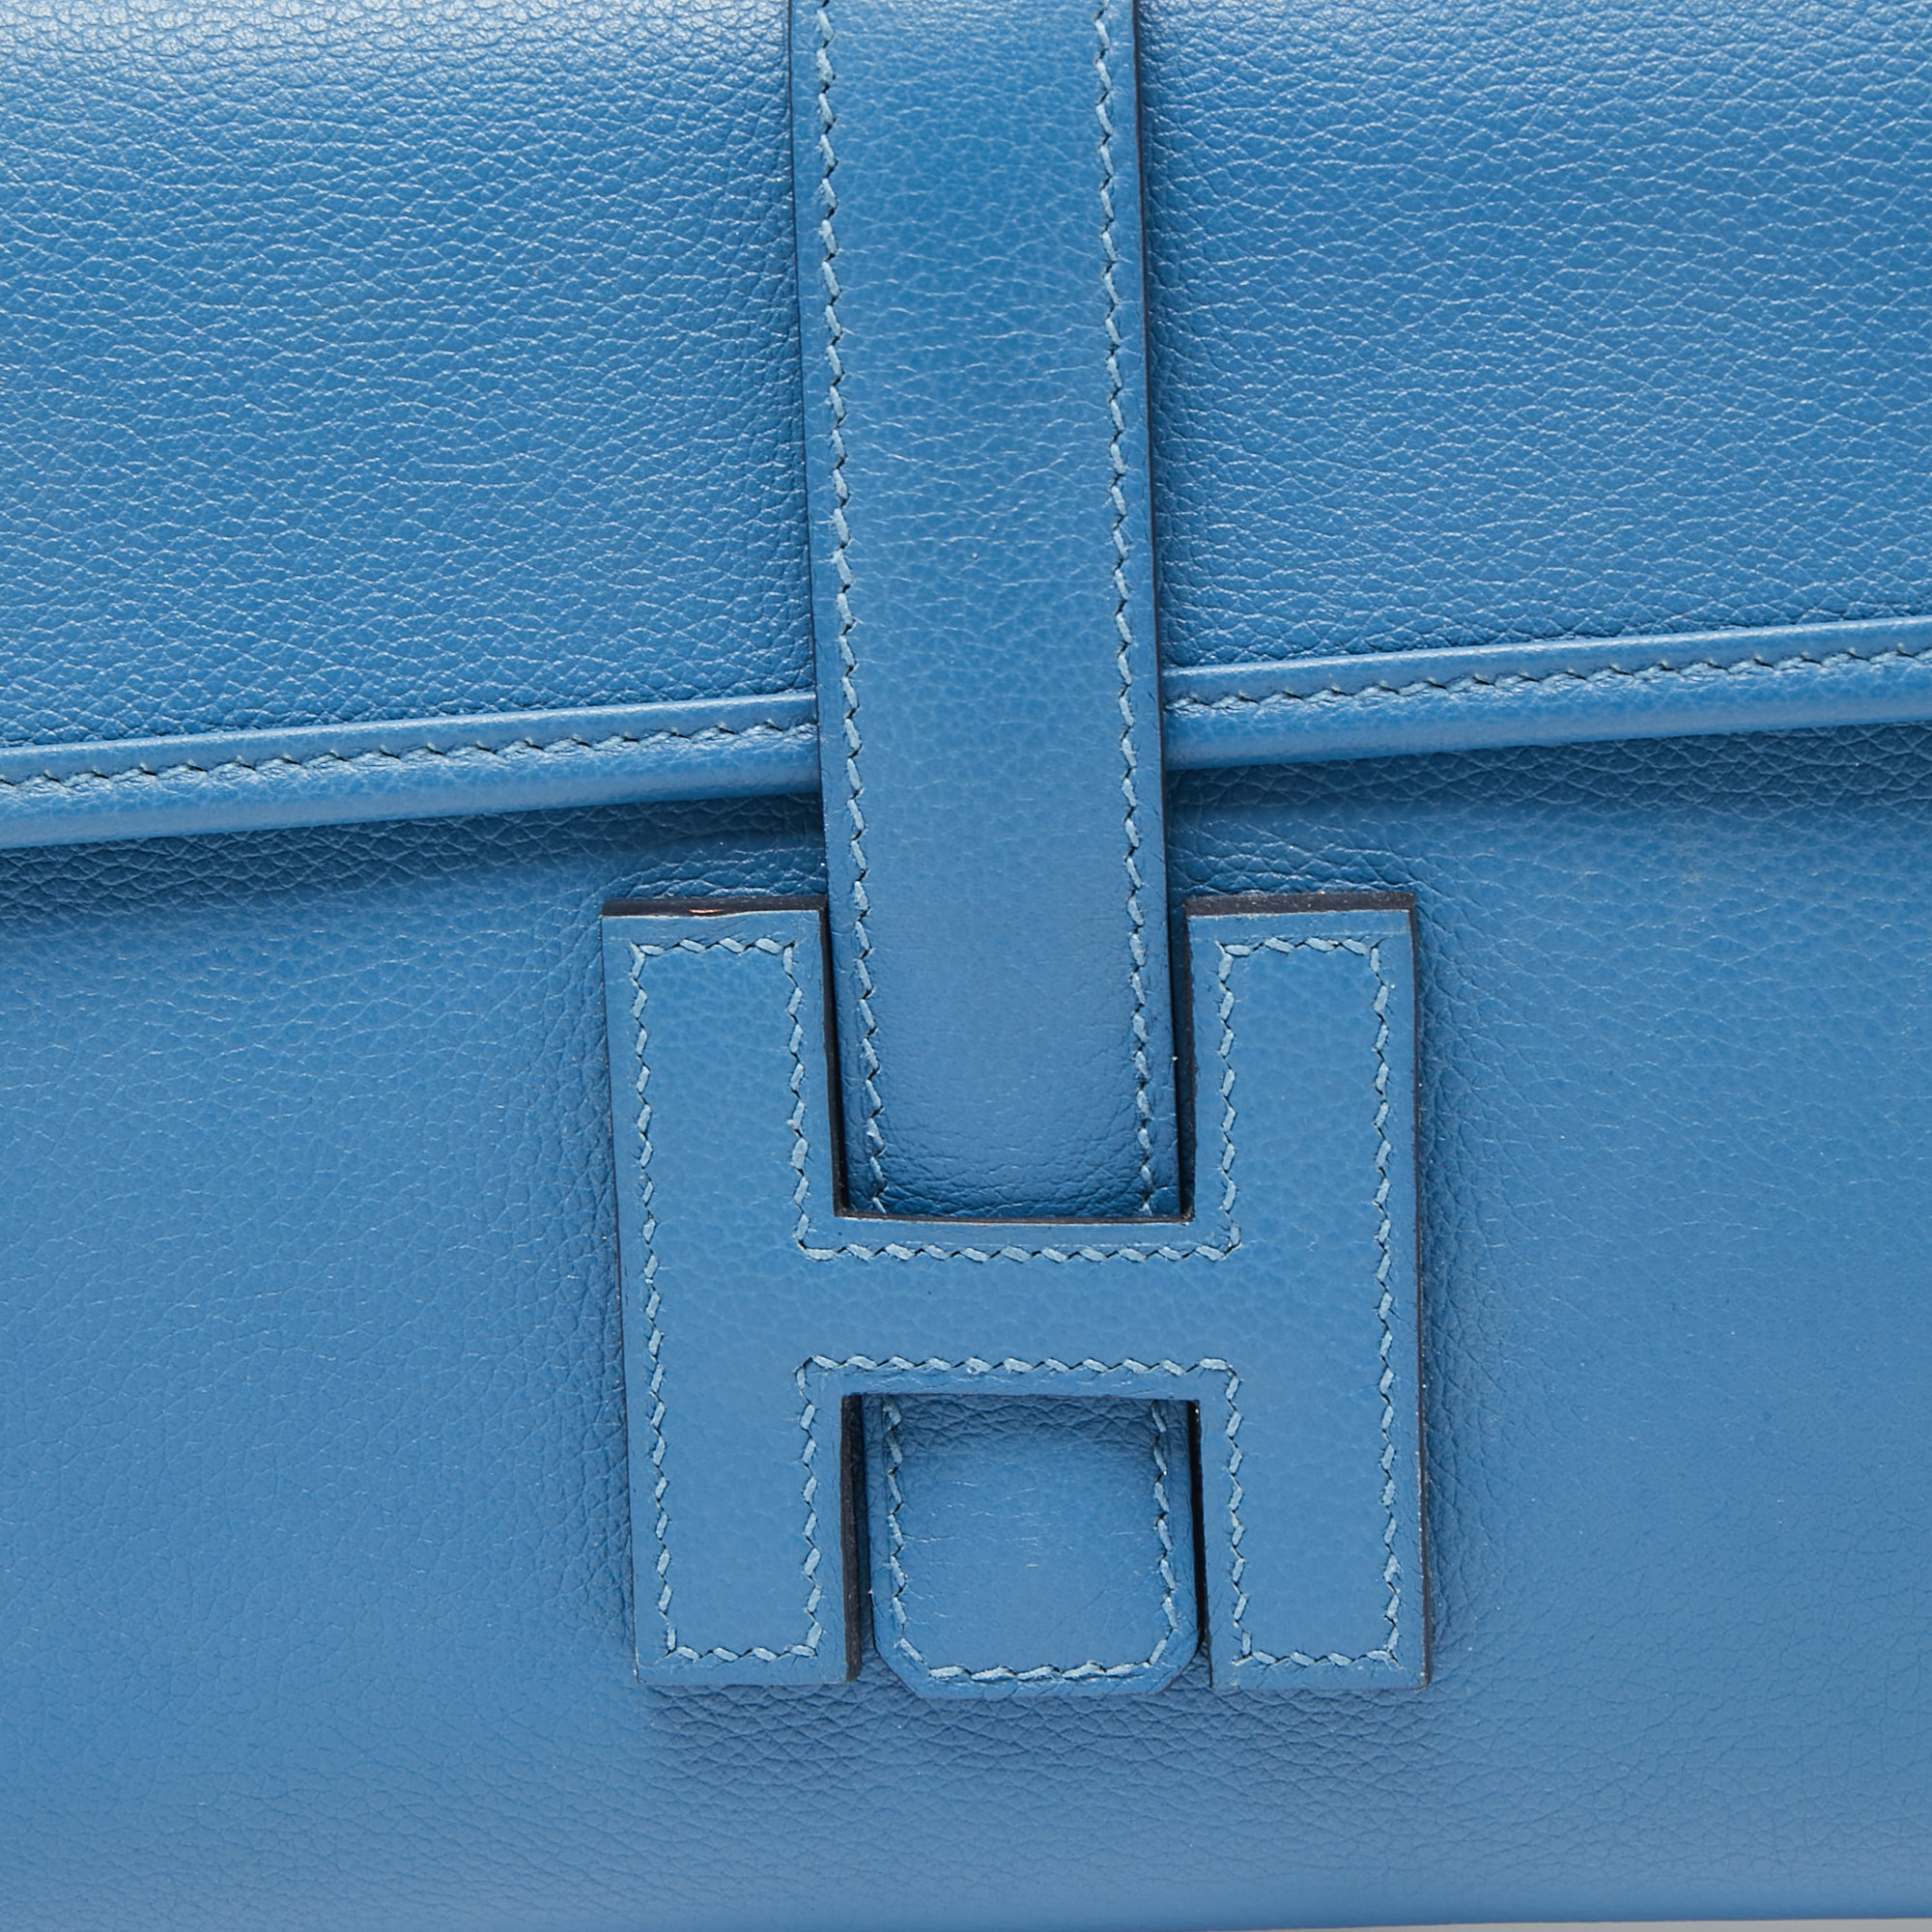 Hermes Jige Clutch Electric Blue 29cm NIB – Boutique Patina